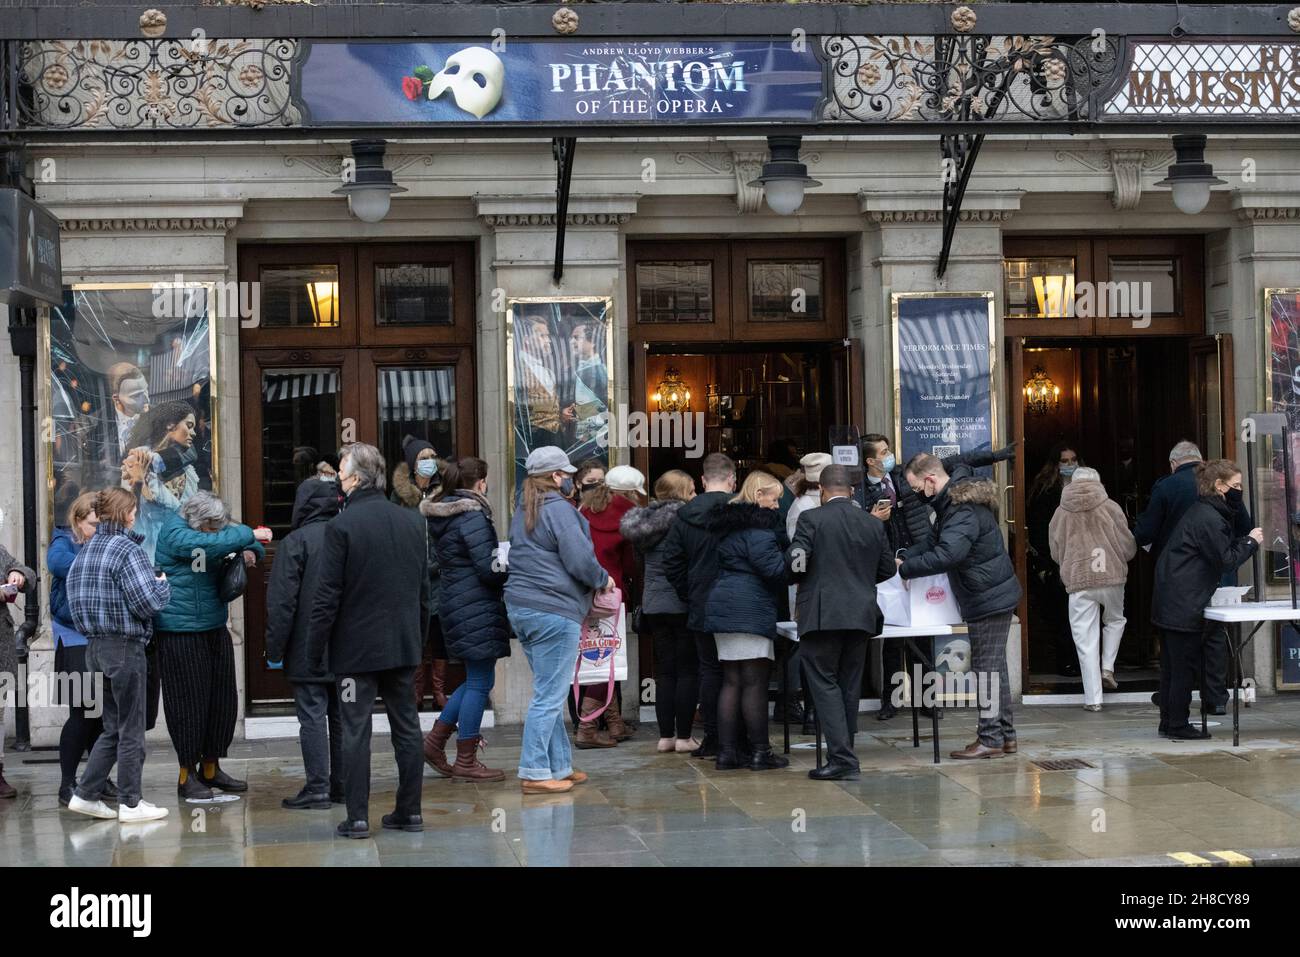 Code in attesa di entrare nel Majestic Theatre per guardare il Fantasma dell'Opera, Haymarket, Londra, Inghilterra, Regno Unito Foto Stock